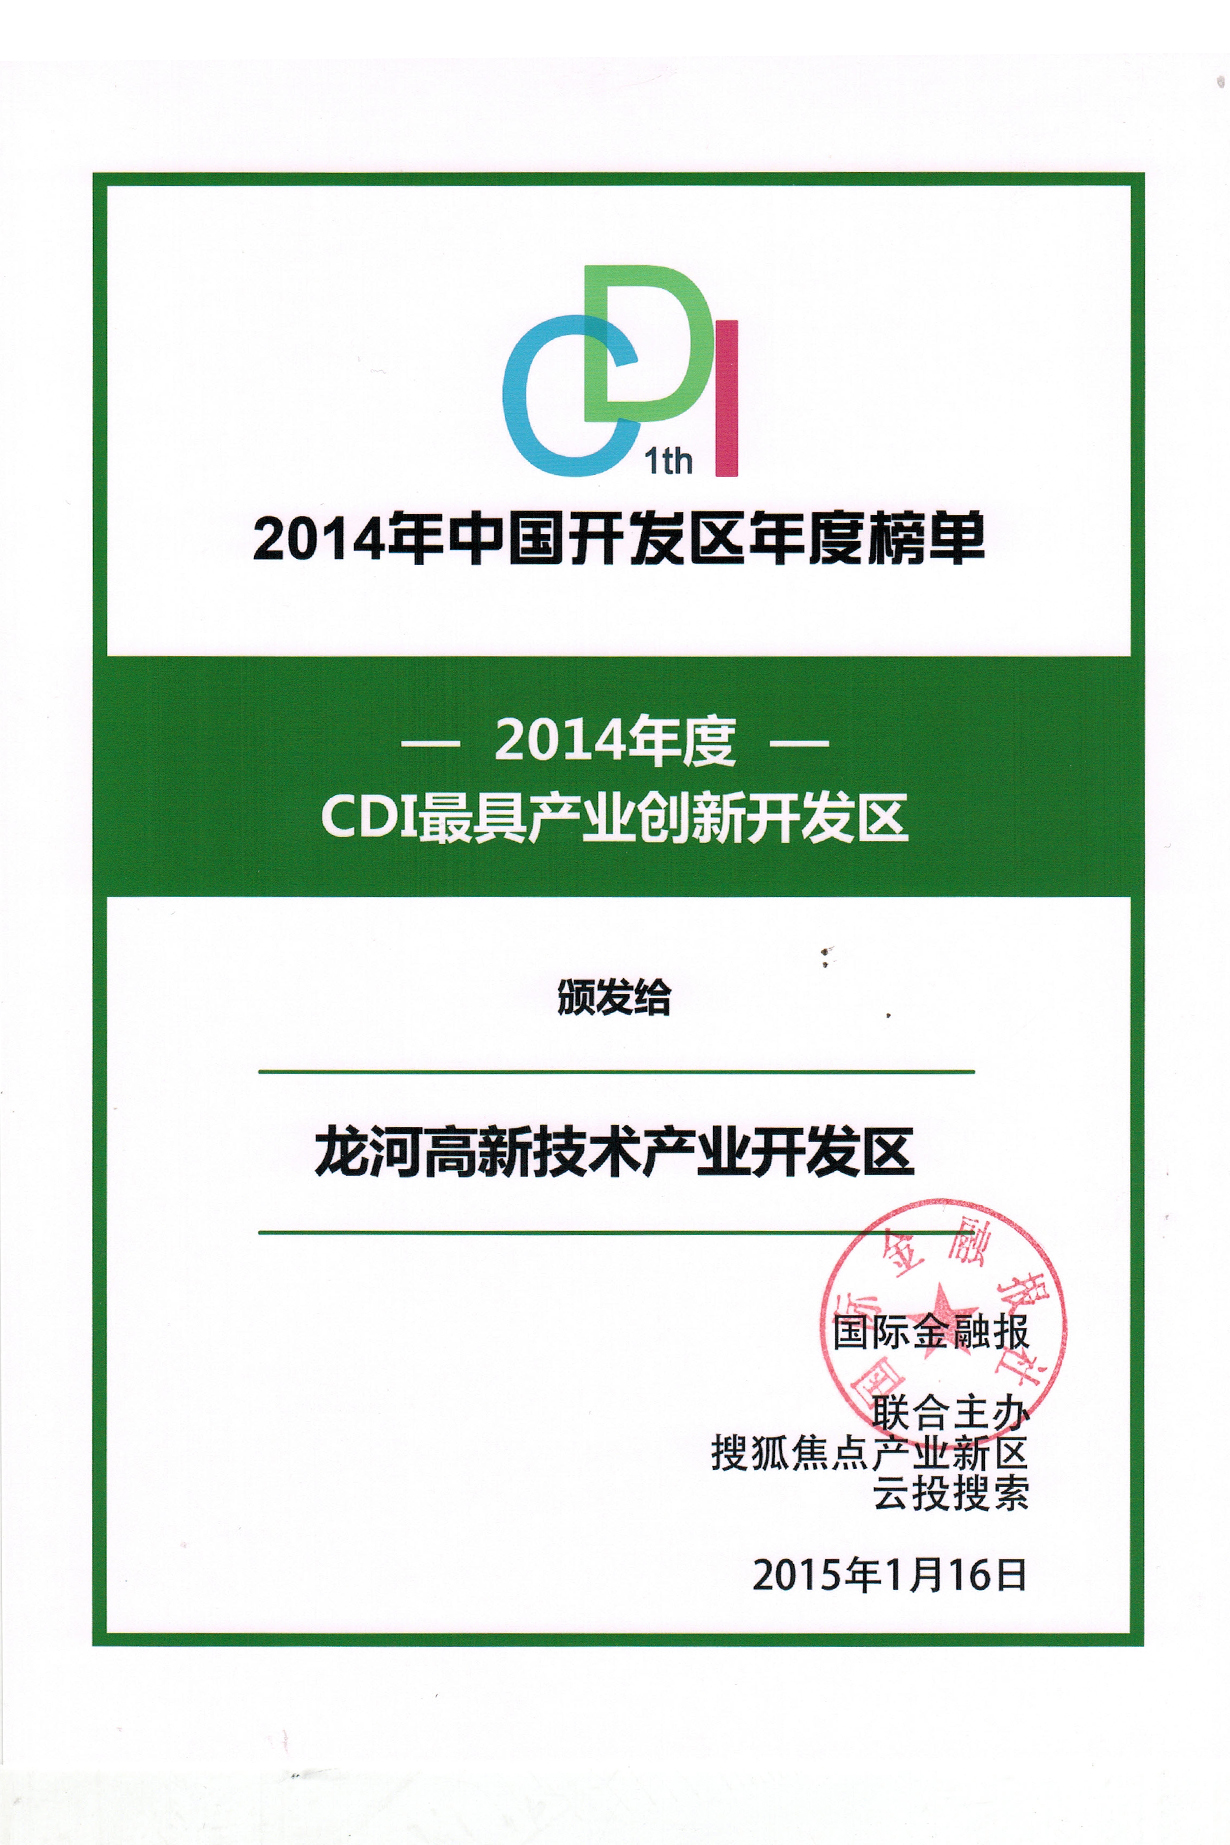 2015年1月16日 2014年度CDI最具产业创新开发区——龙河高新区.JPG